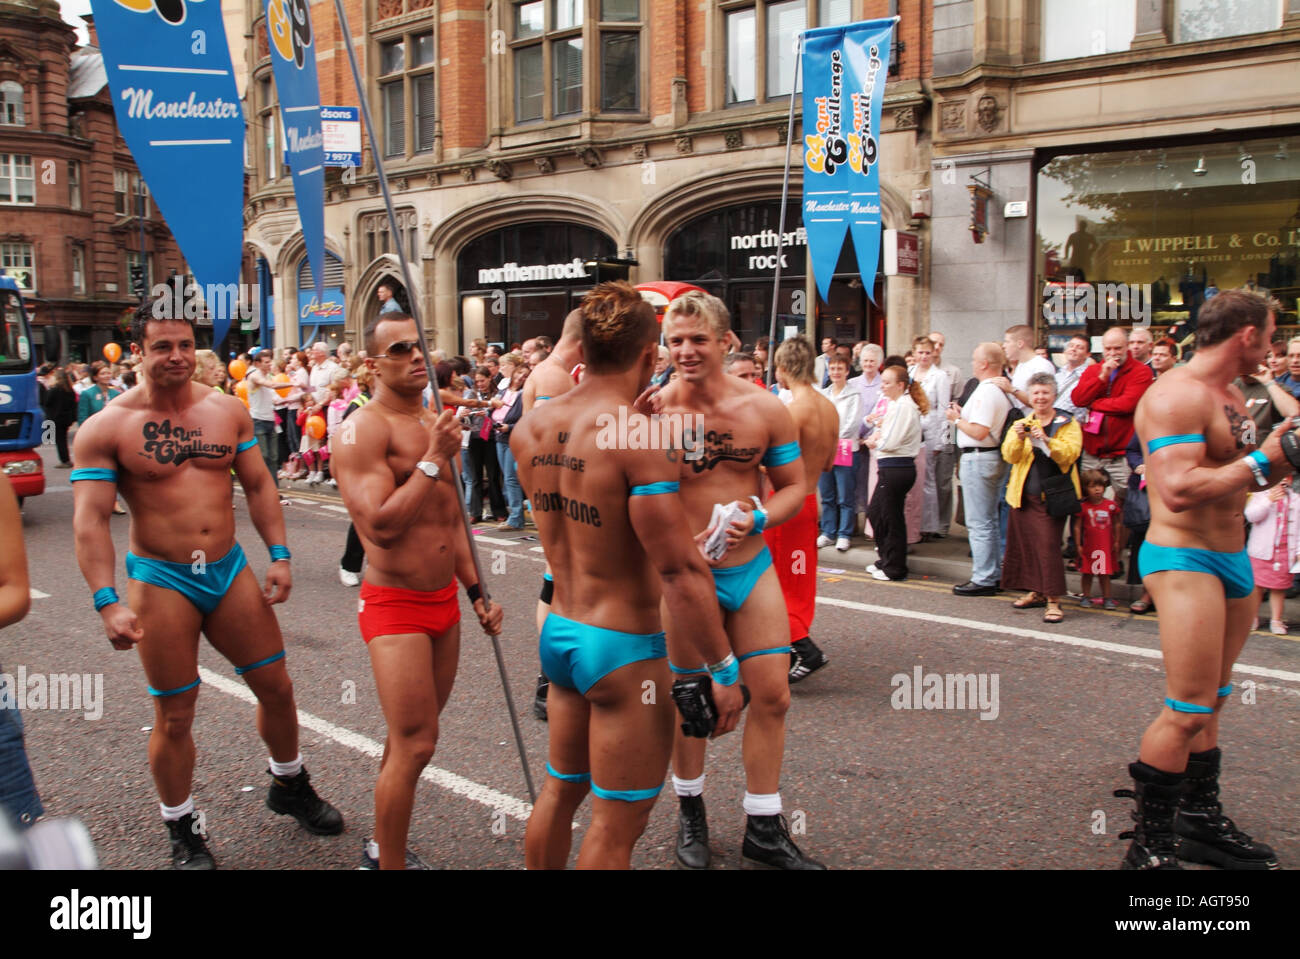 Hald desnudo hombres gay en el Gay Pride Festival Fotografía de stock -  Alamy